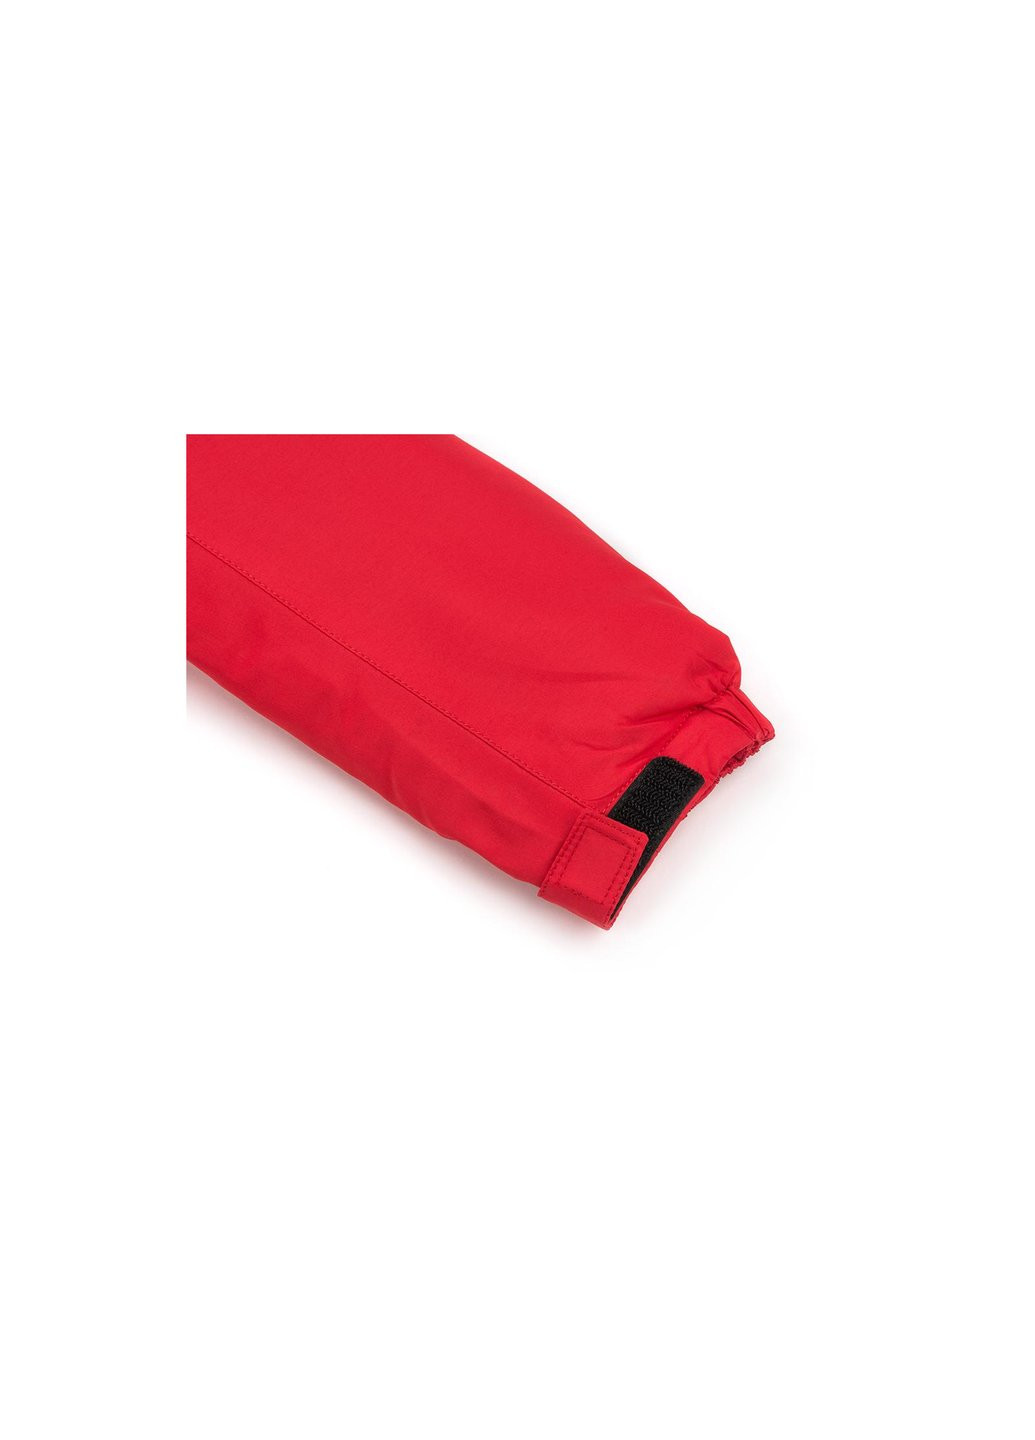 Красная демисезонная куртка парка с капюшоном (sicmy-p402-158b-red) Snowimage